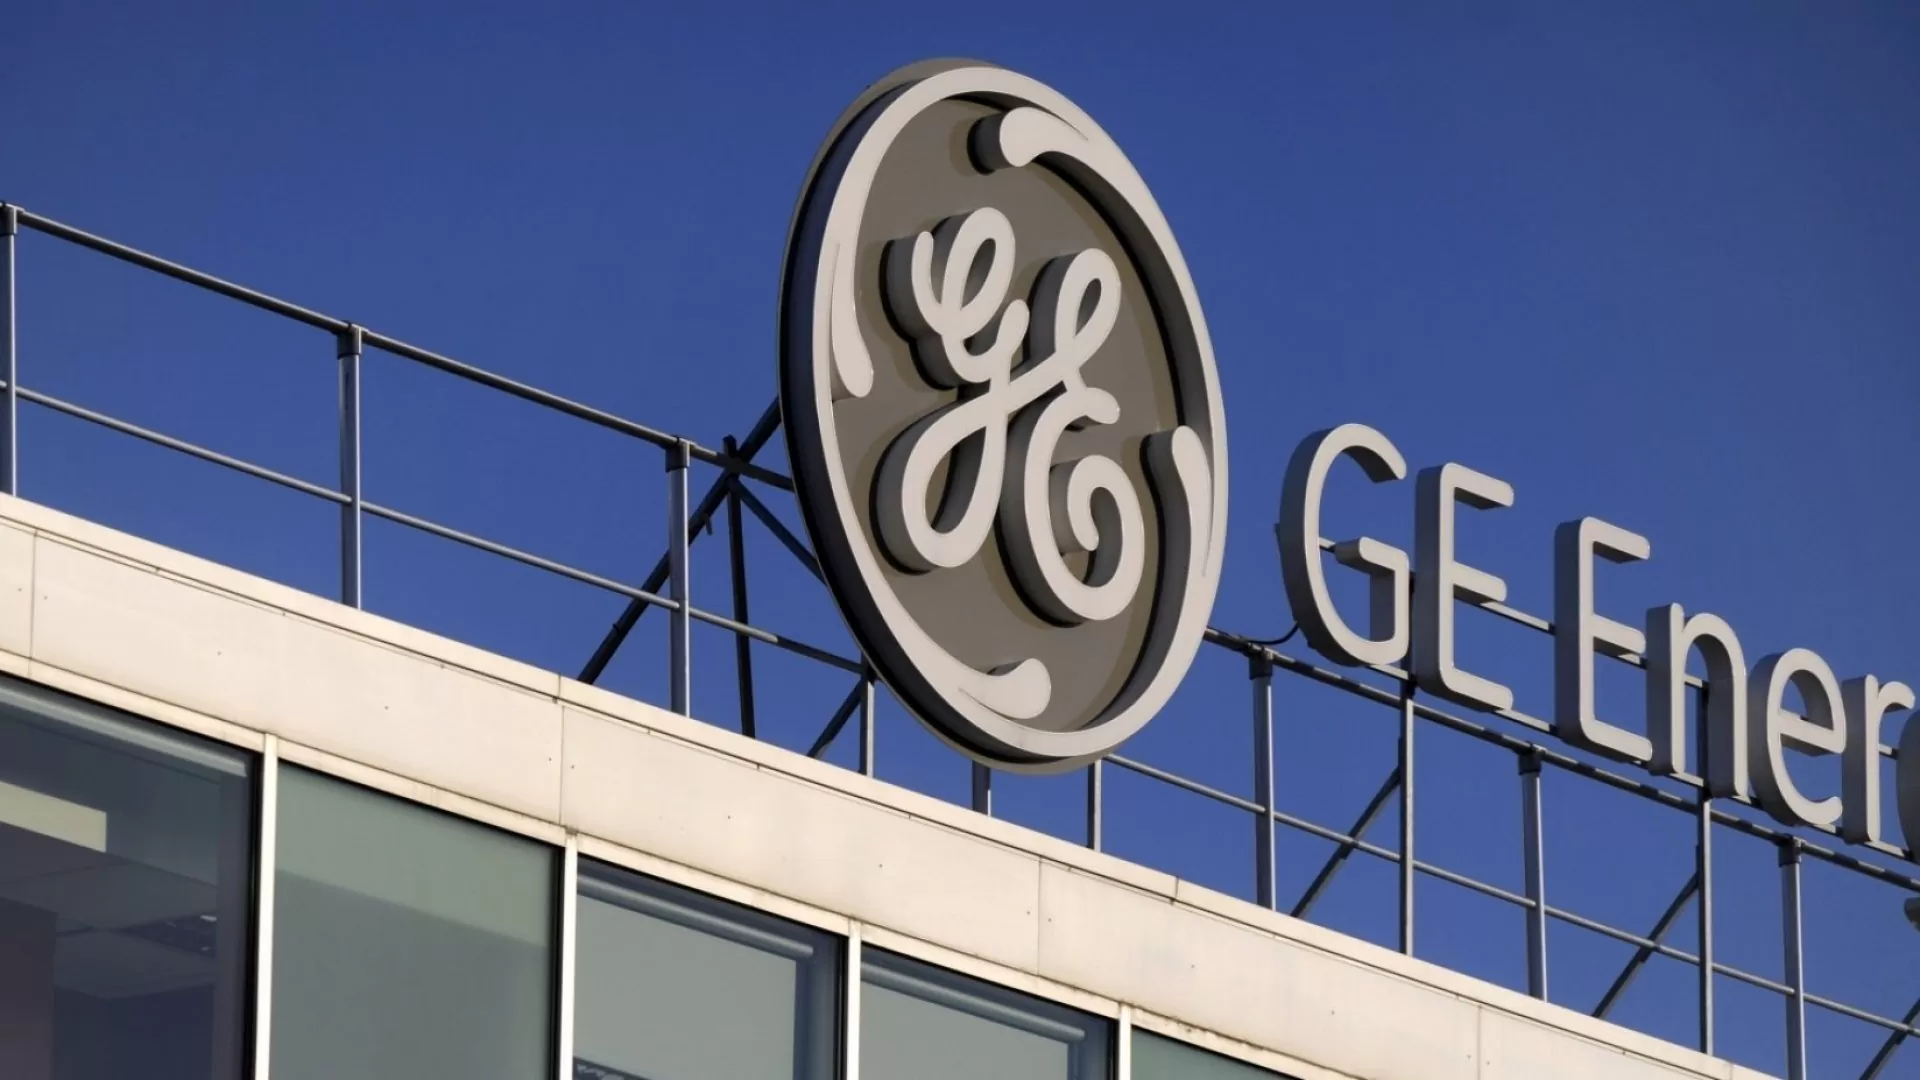 General Electric está com vagas de empregos nos estados da BA, MG, RJ, SP e mais regiões do Brasil; confira